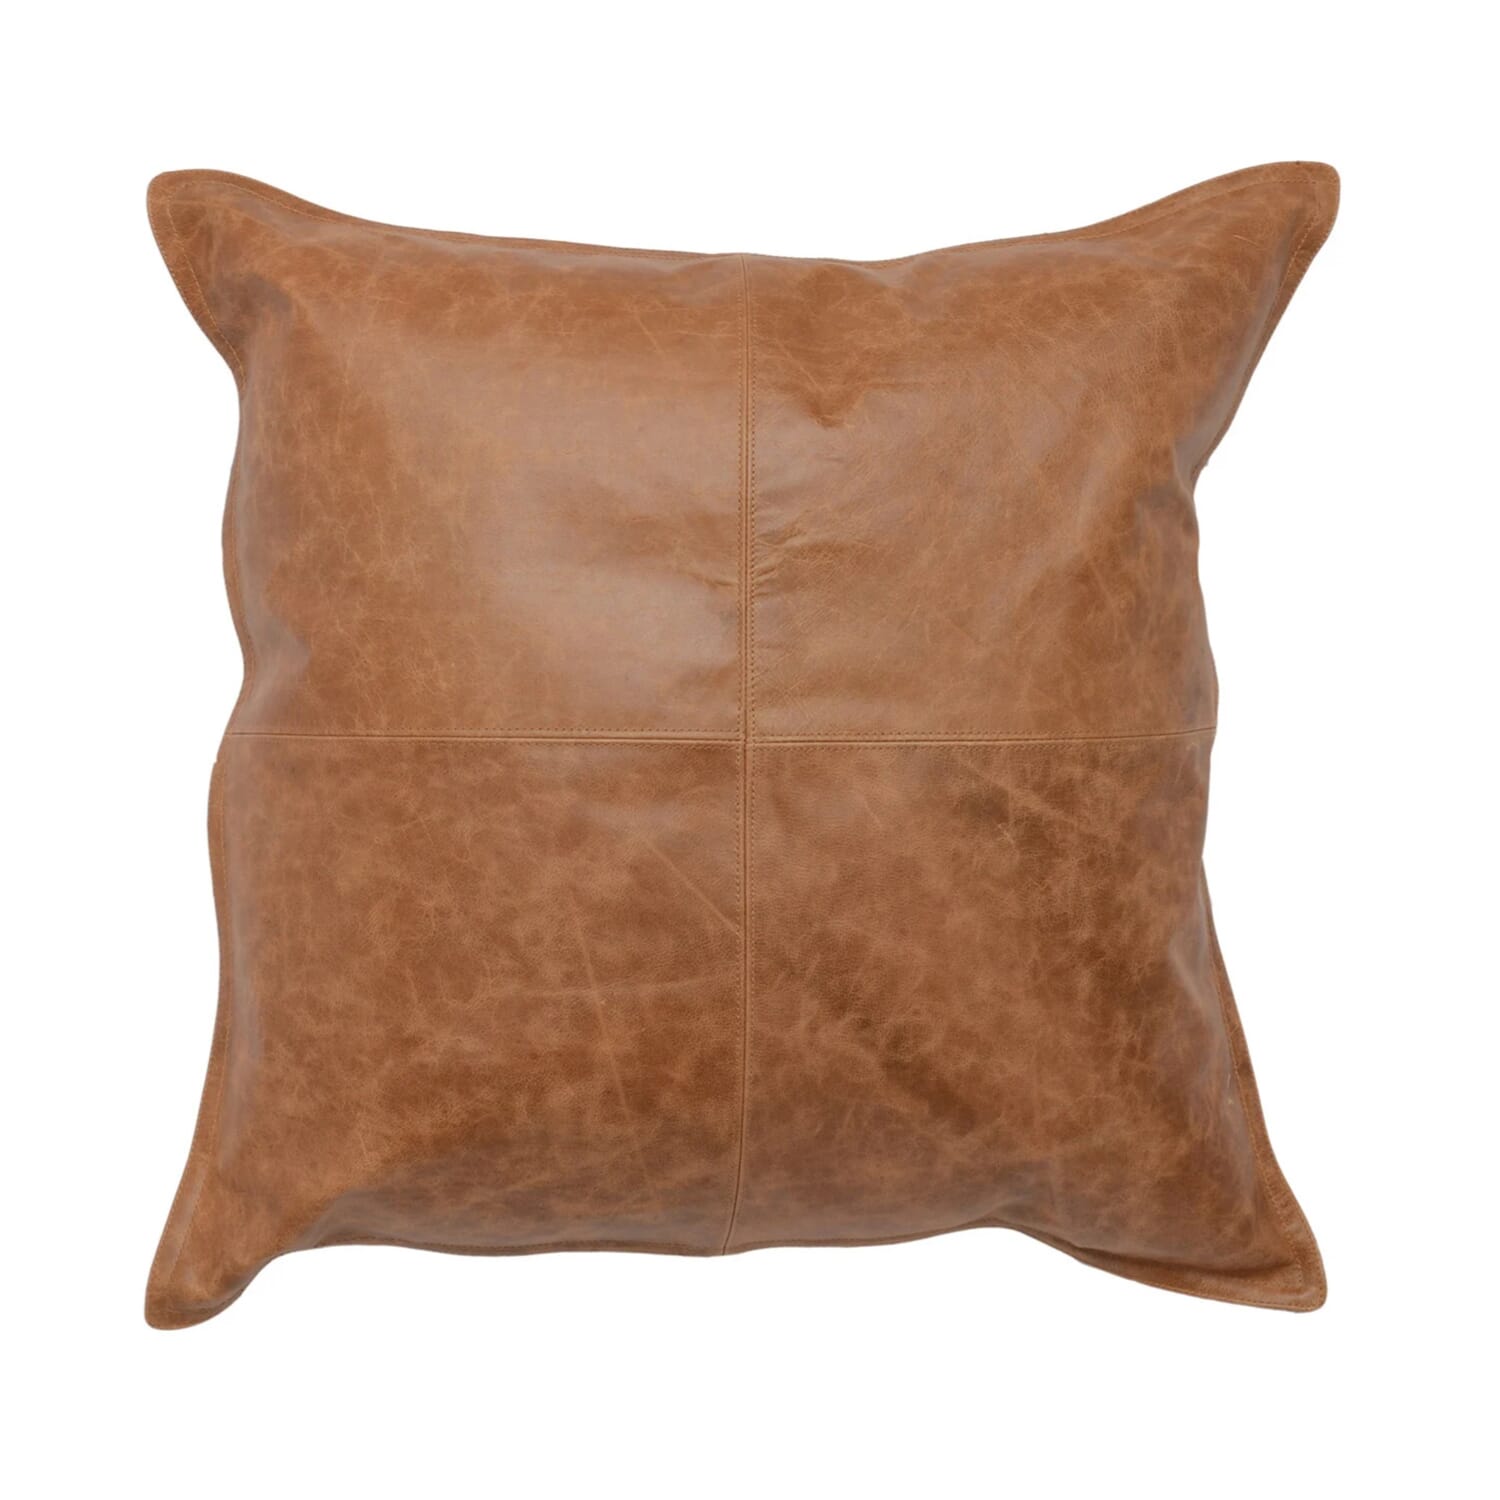 Chestnut 22" Pillow